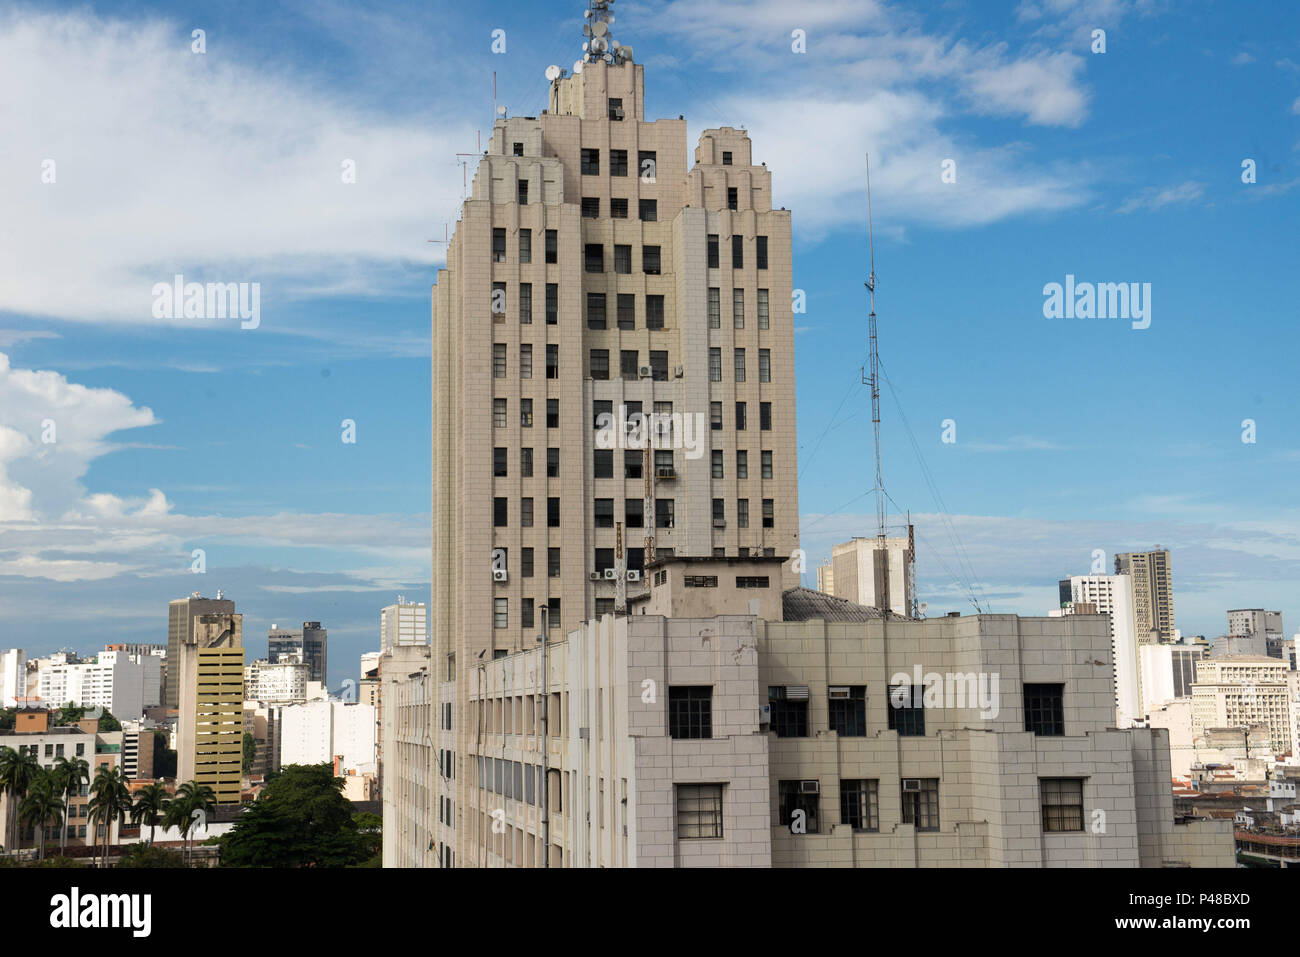 RIO DE JANEIRO, RJ - 31.03.2015: Vista de parte do Palácio Duque de Caxias no centro da cidade. Foto: Celso Pupo / Fotoarena Stock Photo